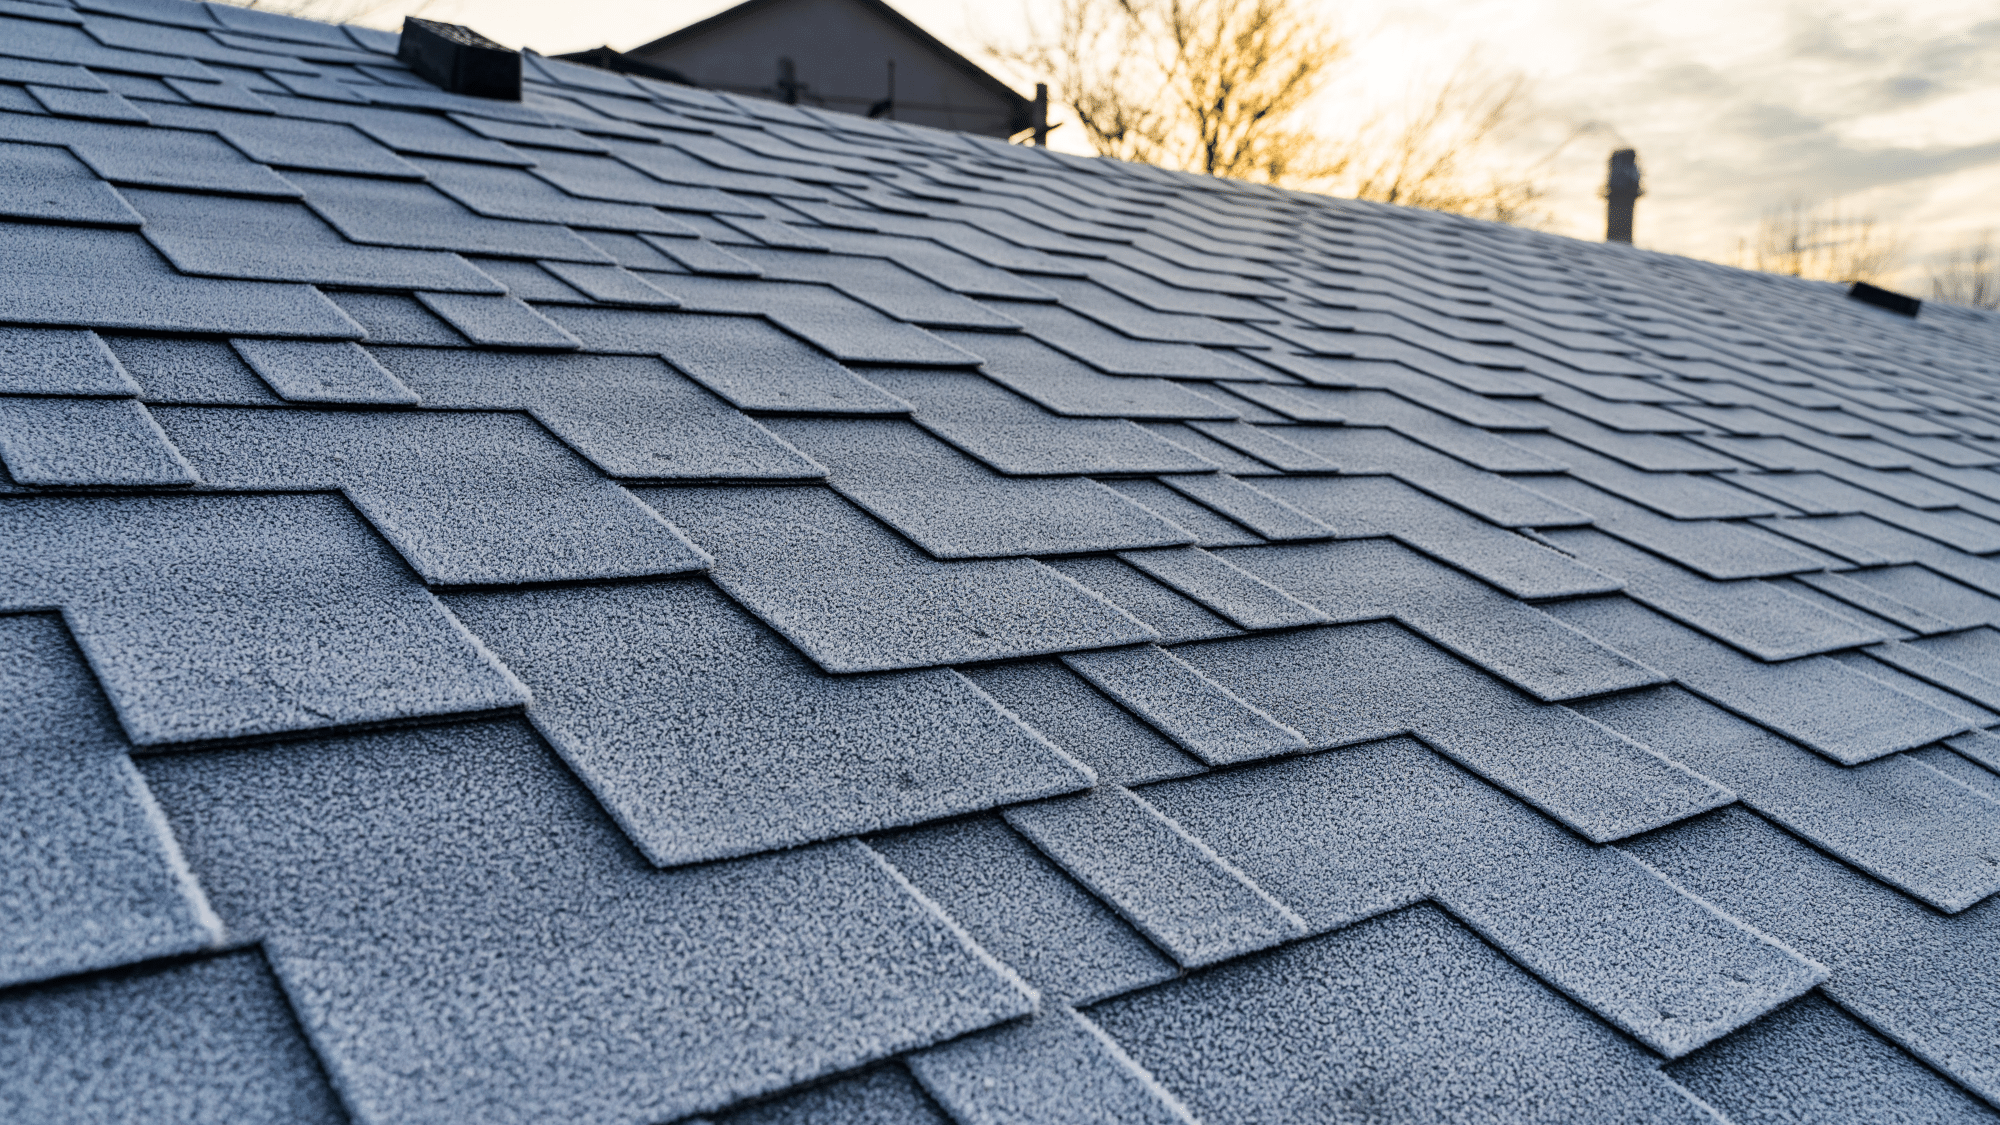 Strasburg Roof Types - Asphalt shingles